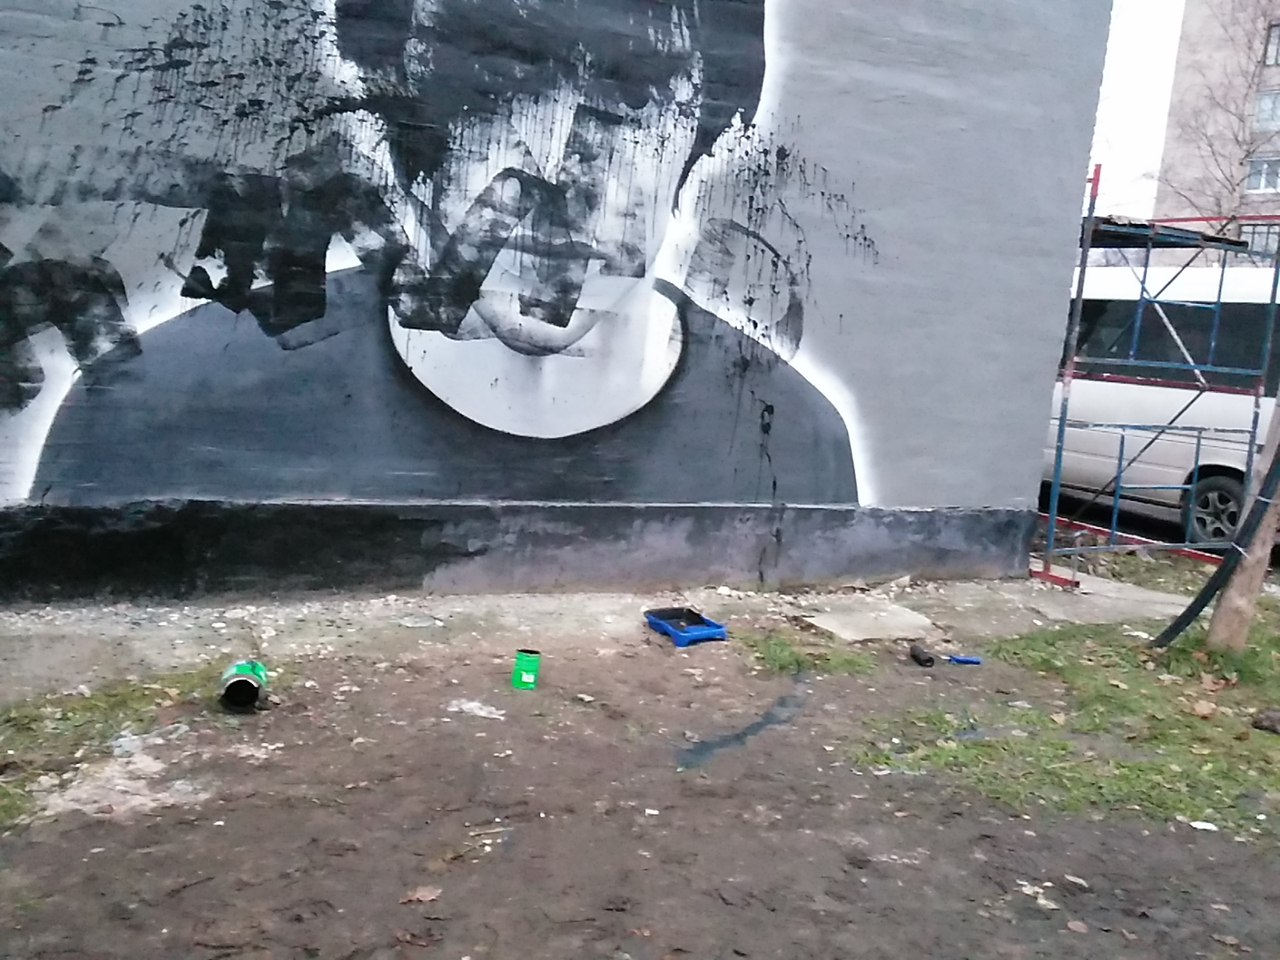 Вандалы с валиками испортили граффити с Моторолой и Нурбагандовым в Петербурге